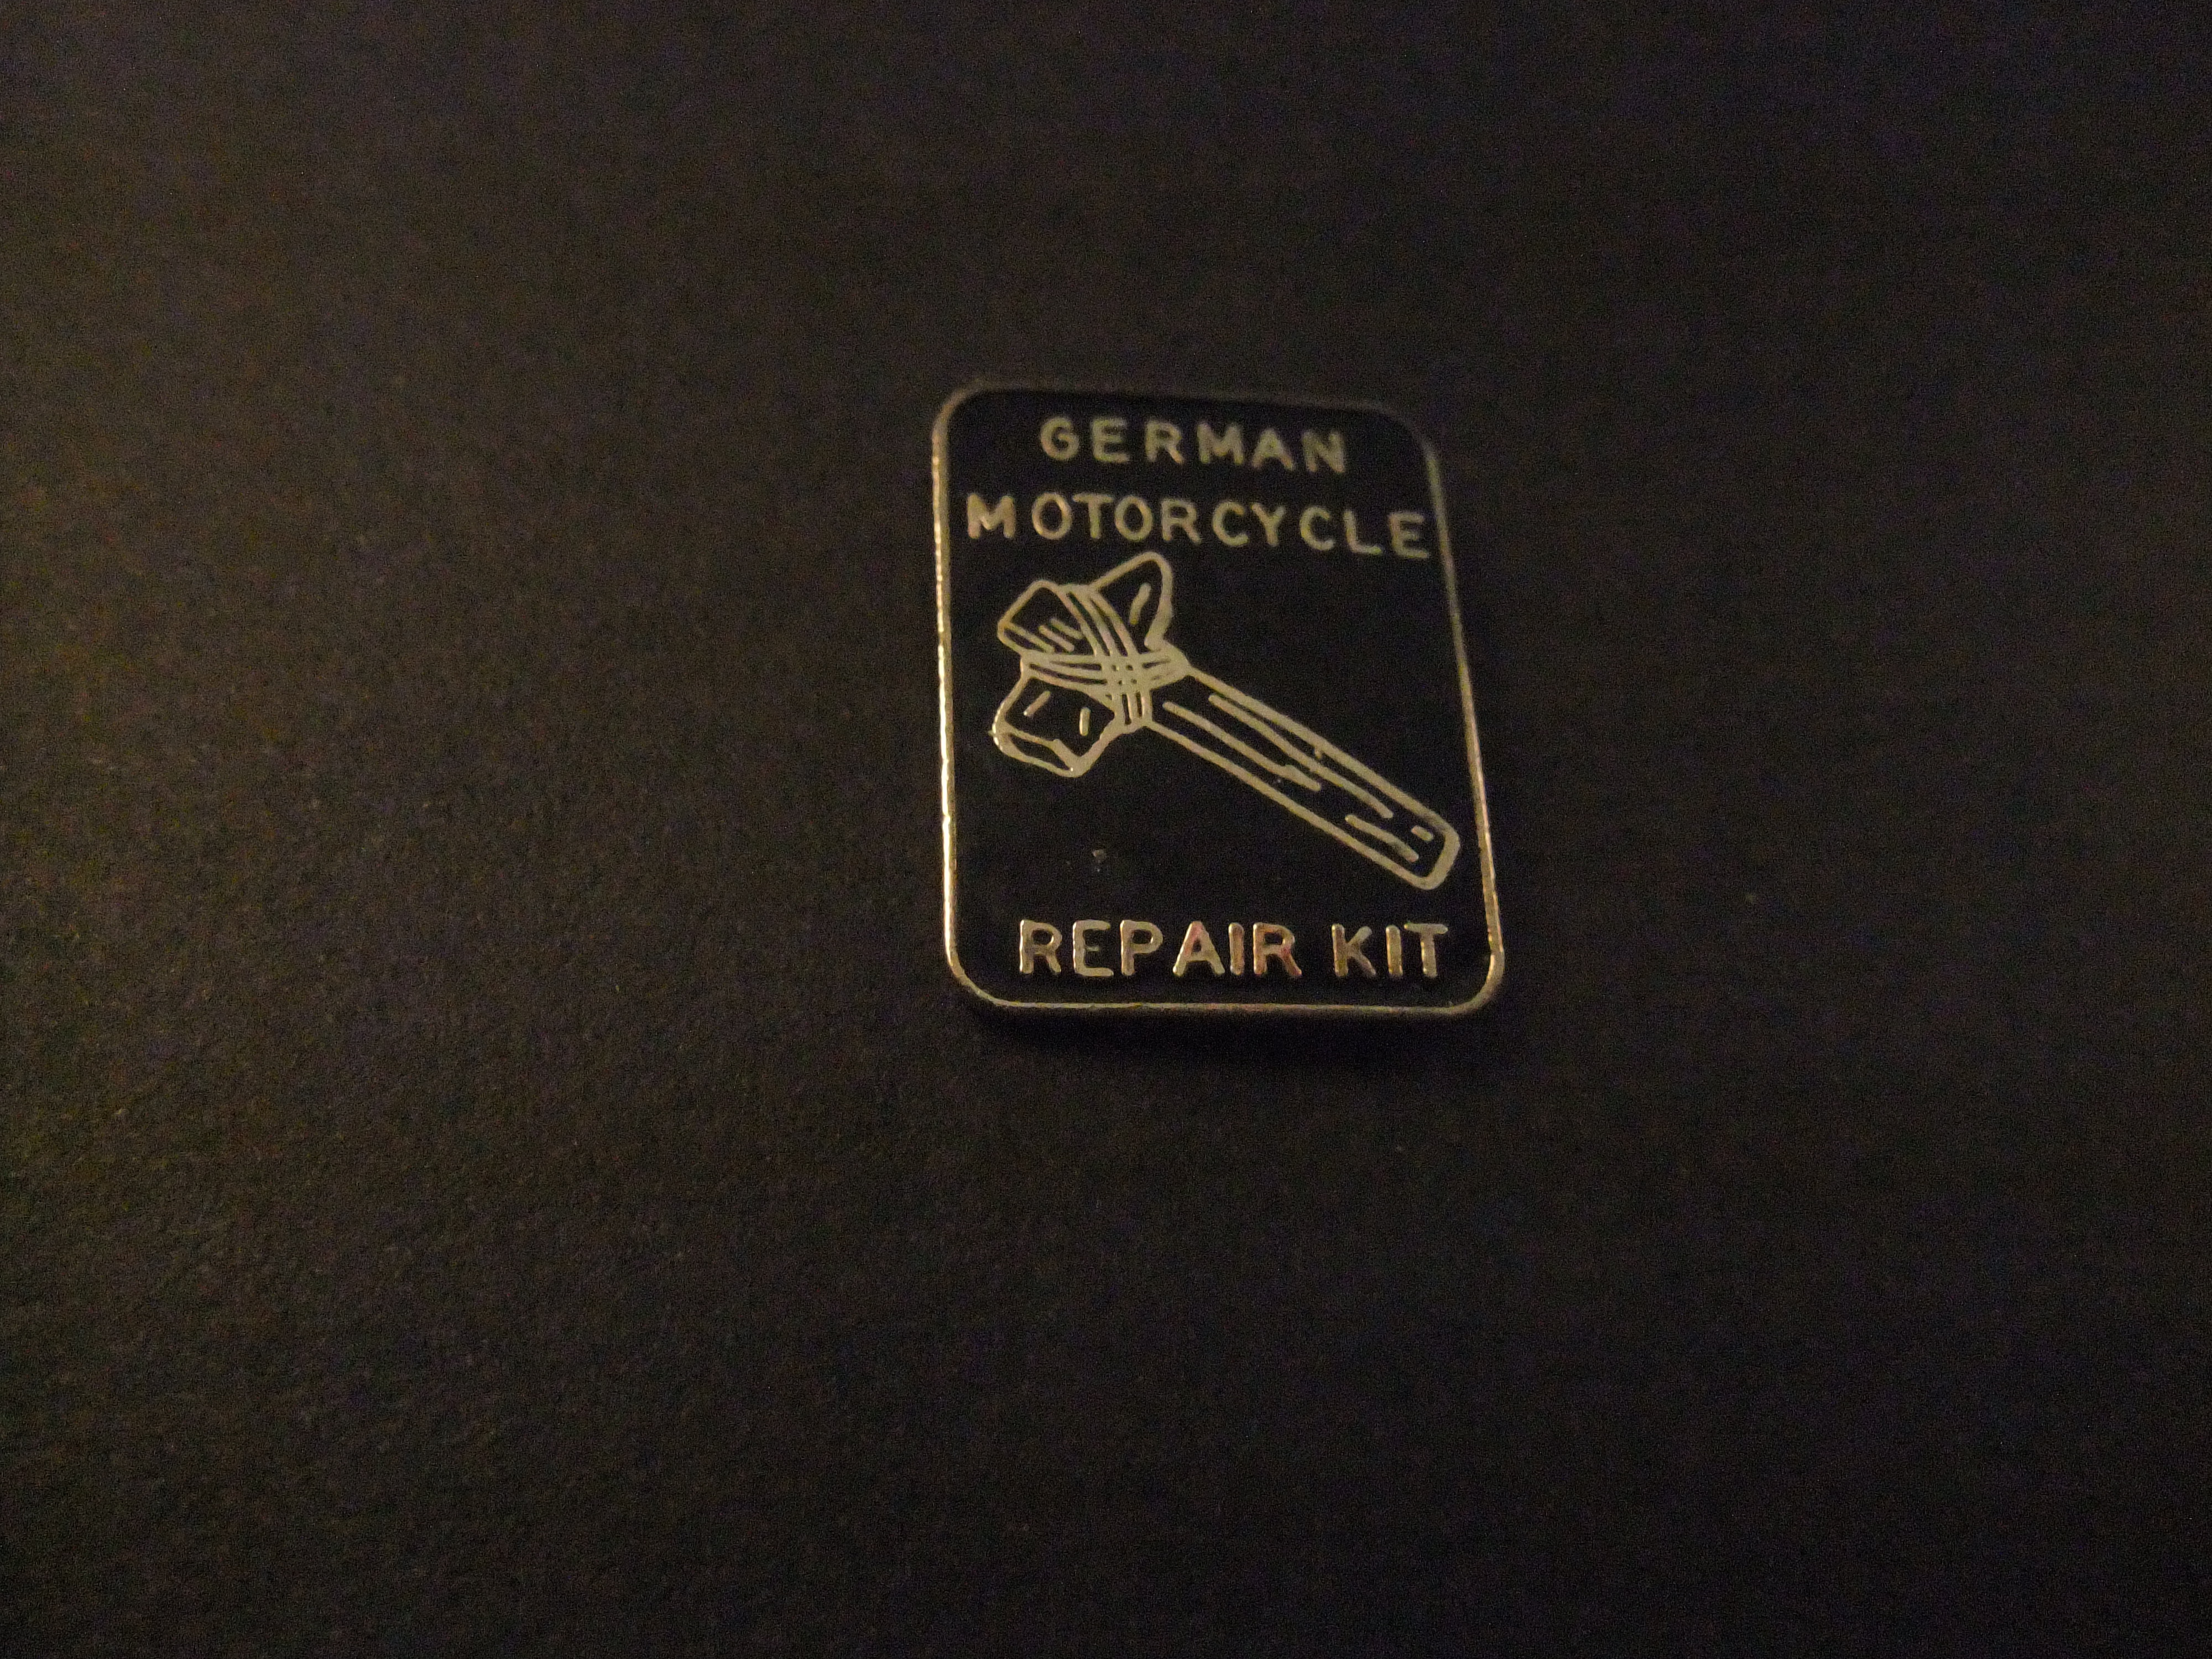 German Motorcycle repair kit